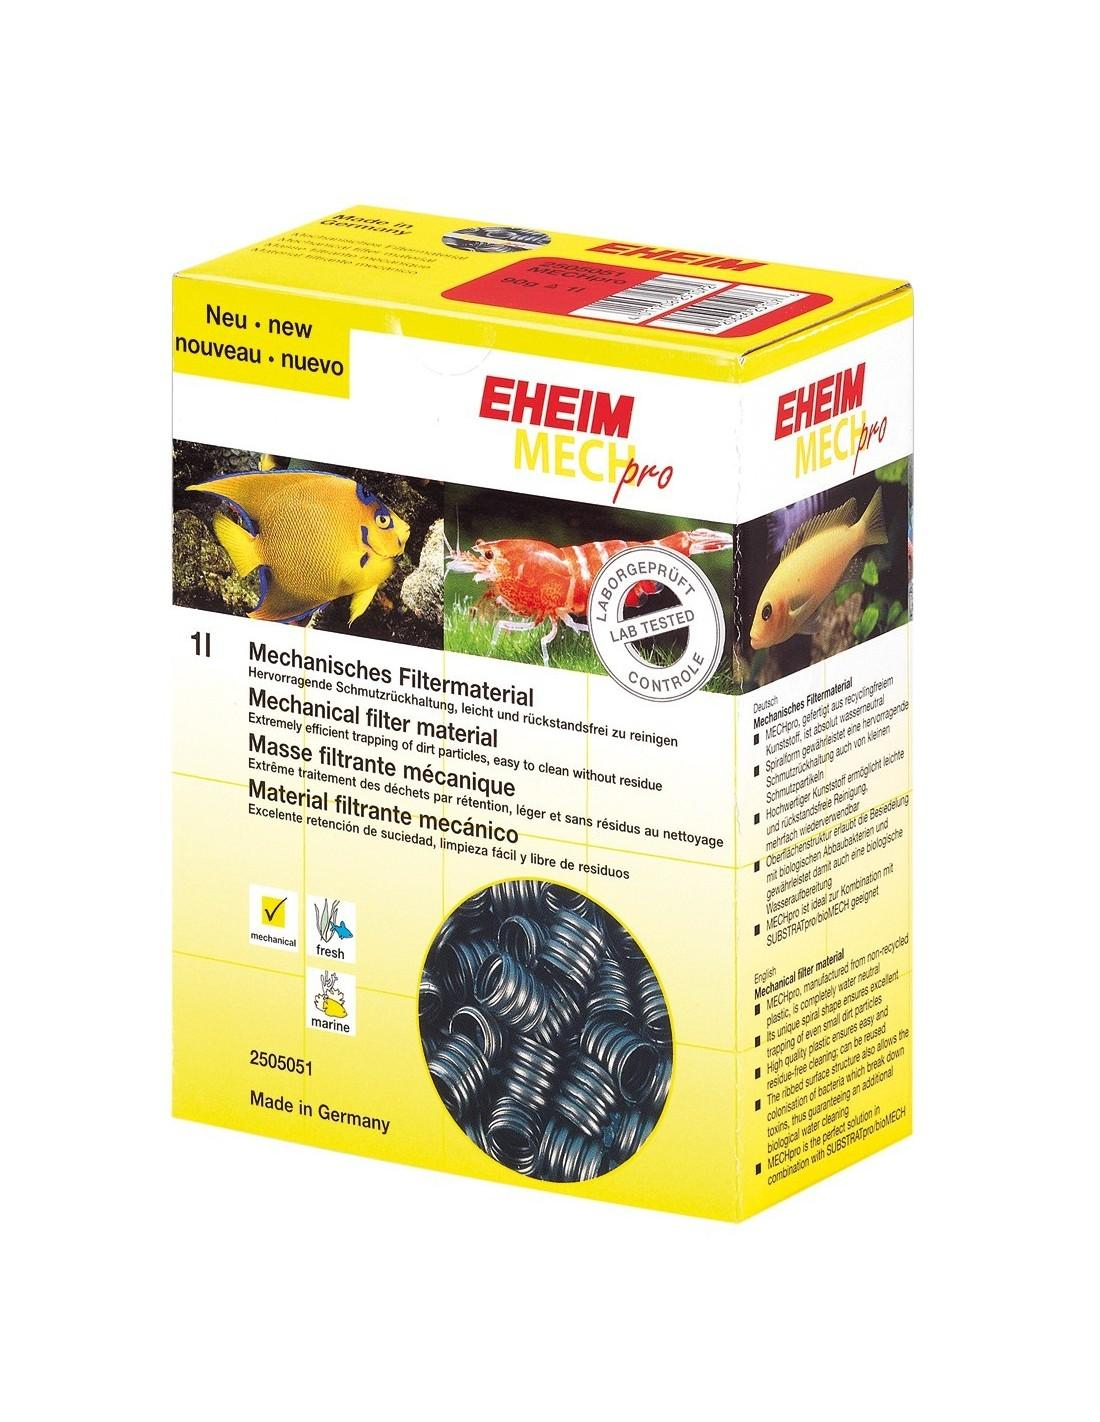 Mechanische Filtermedien 90g EHEIM mech pro